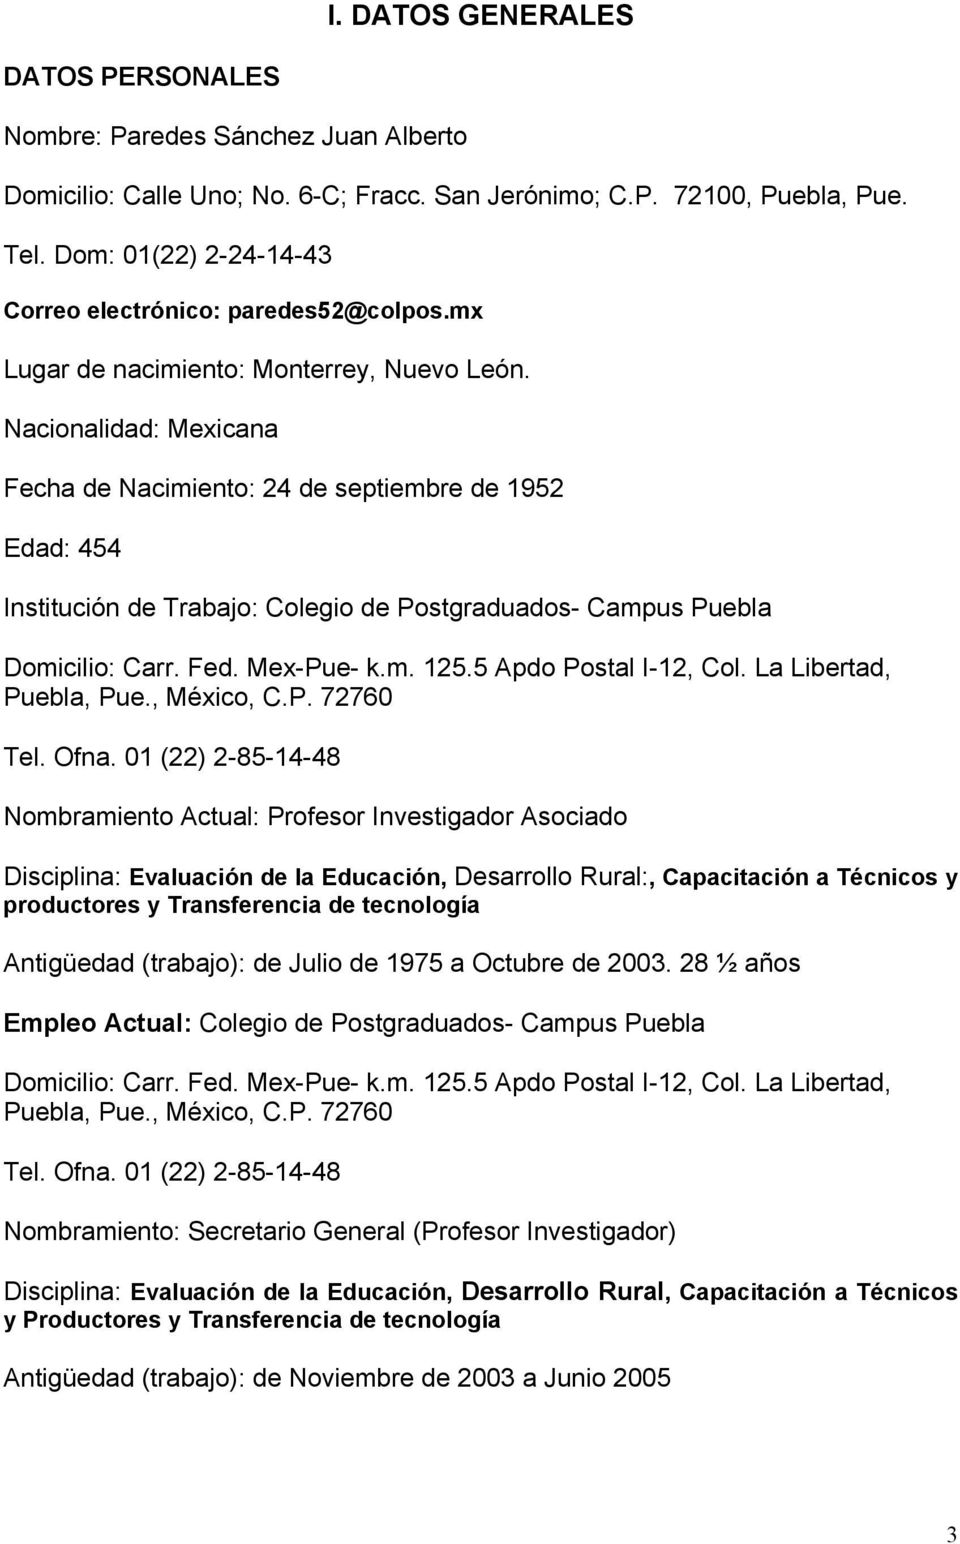 Nacionalidad: Mexicana Fecha de Nacimiento: 24 de septiembre de 1952 Edad: 454 Institución de Trabajo: Colegio de Postgraduados- Campus Puebla Domicilio: Carr. Fed. Mex-Pue- k.m. 125.